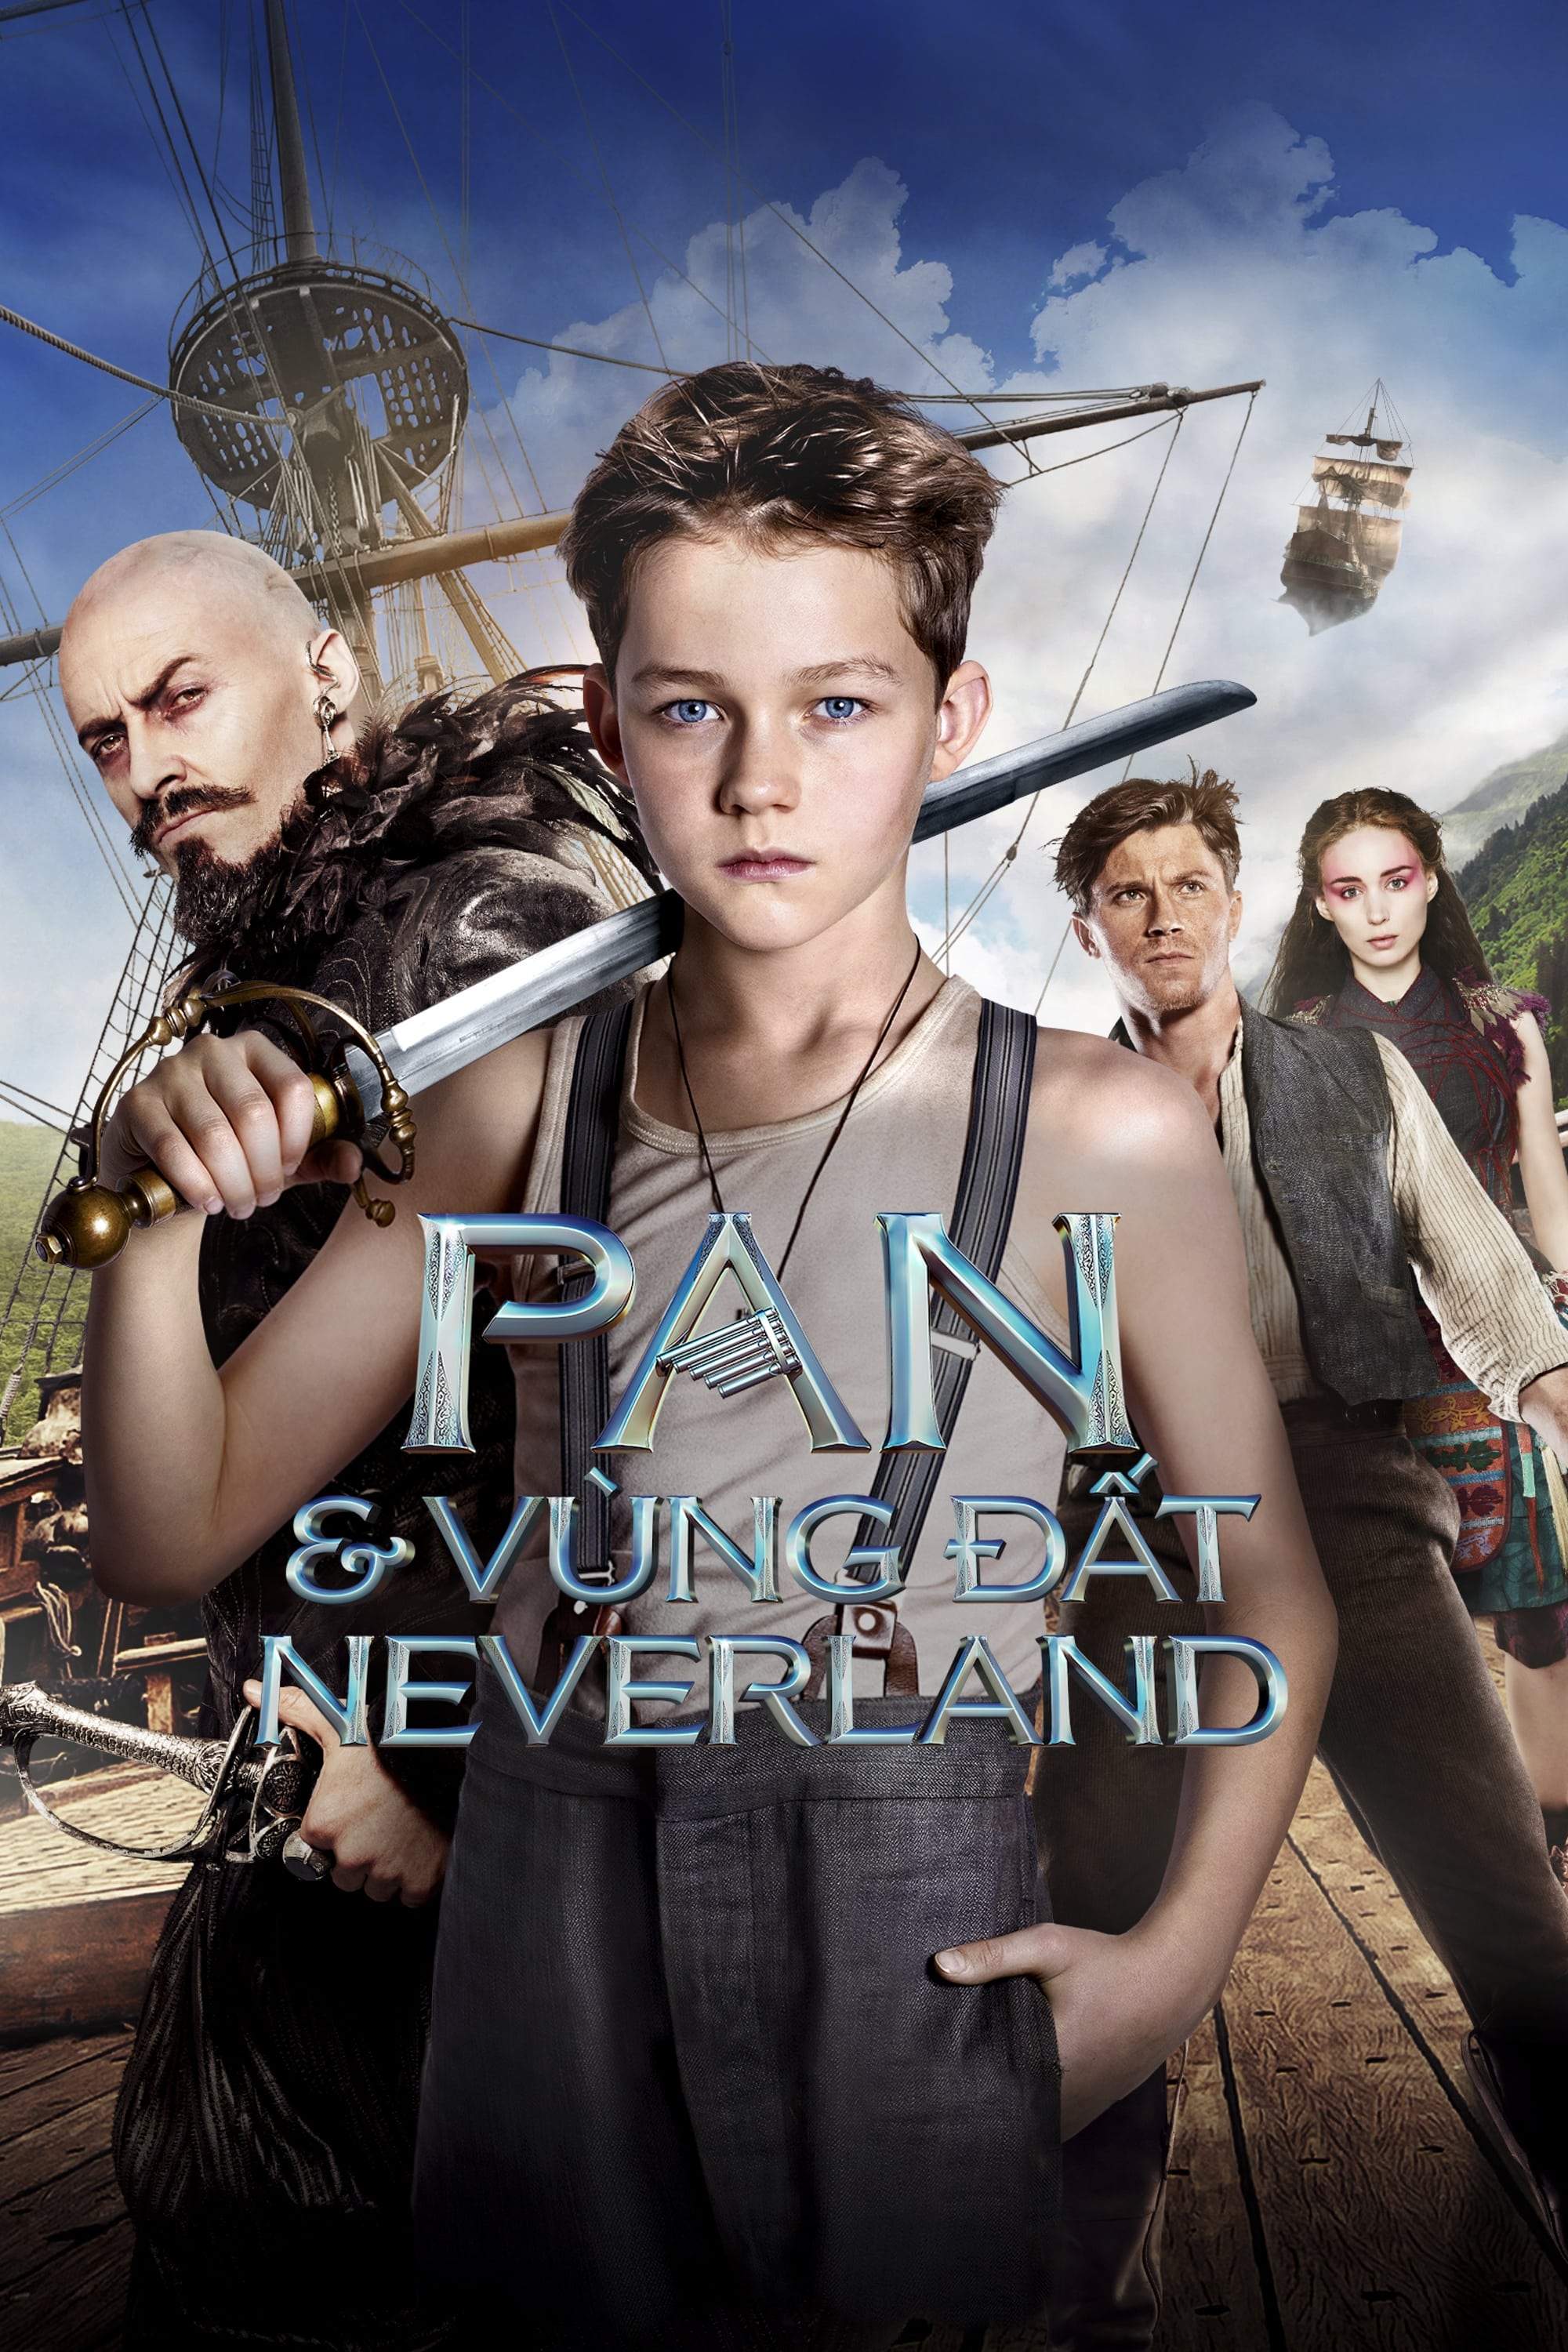 Pan & Vùng Đất Neverland (Pan) [2015]